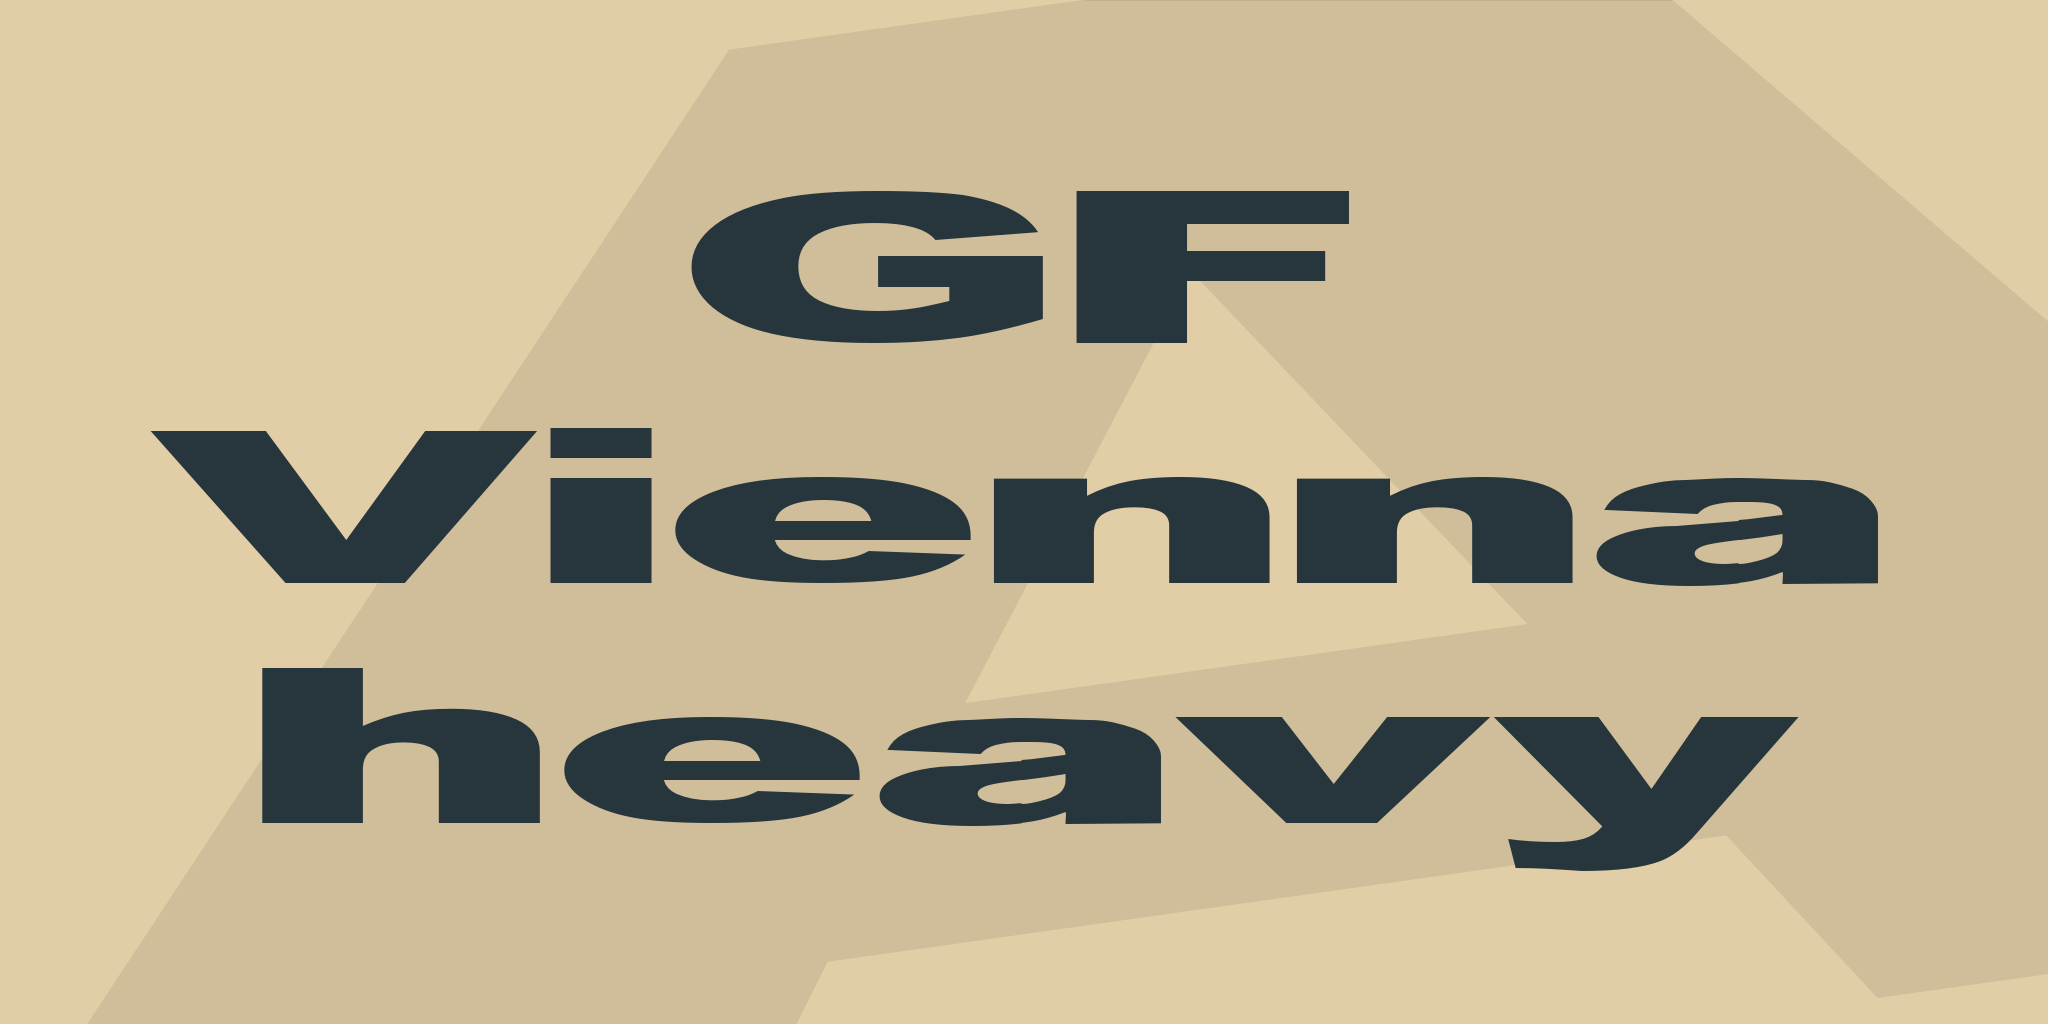 Gf Vienna heavy